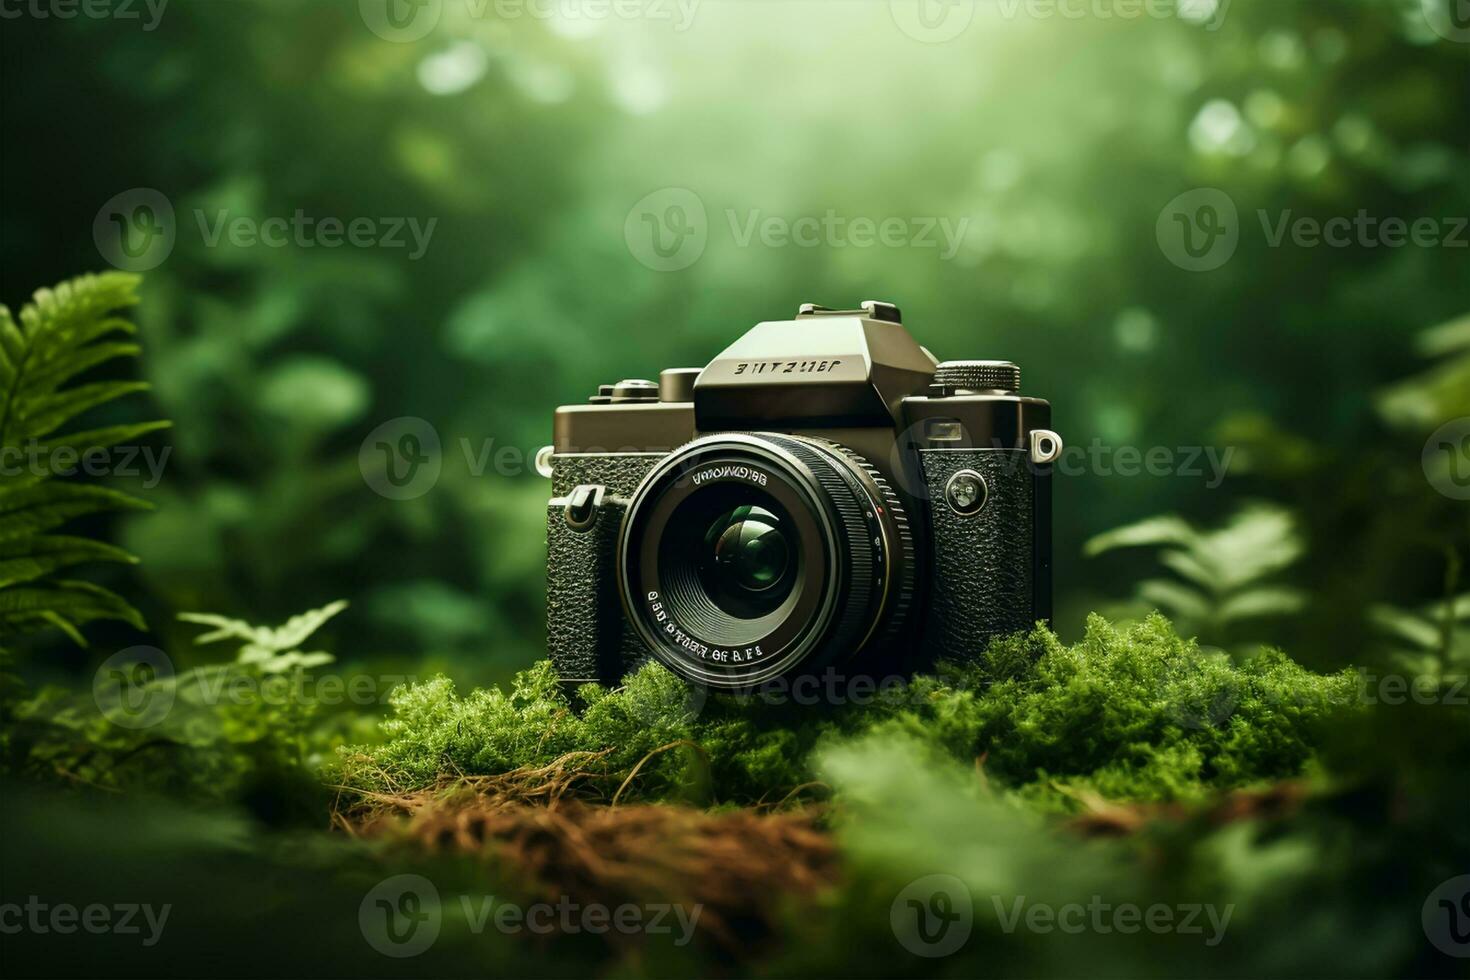 verde telecamera su erba con natura bokeh sfondo. natura concetto. foto